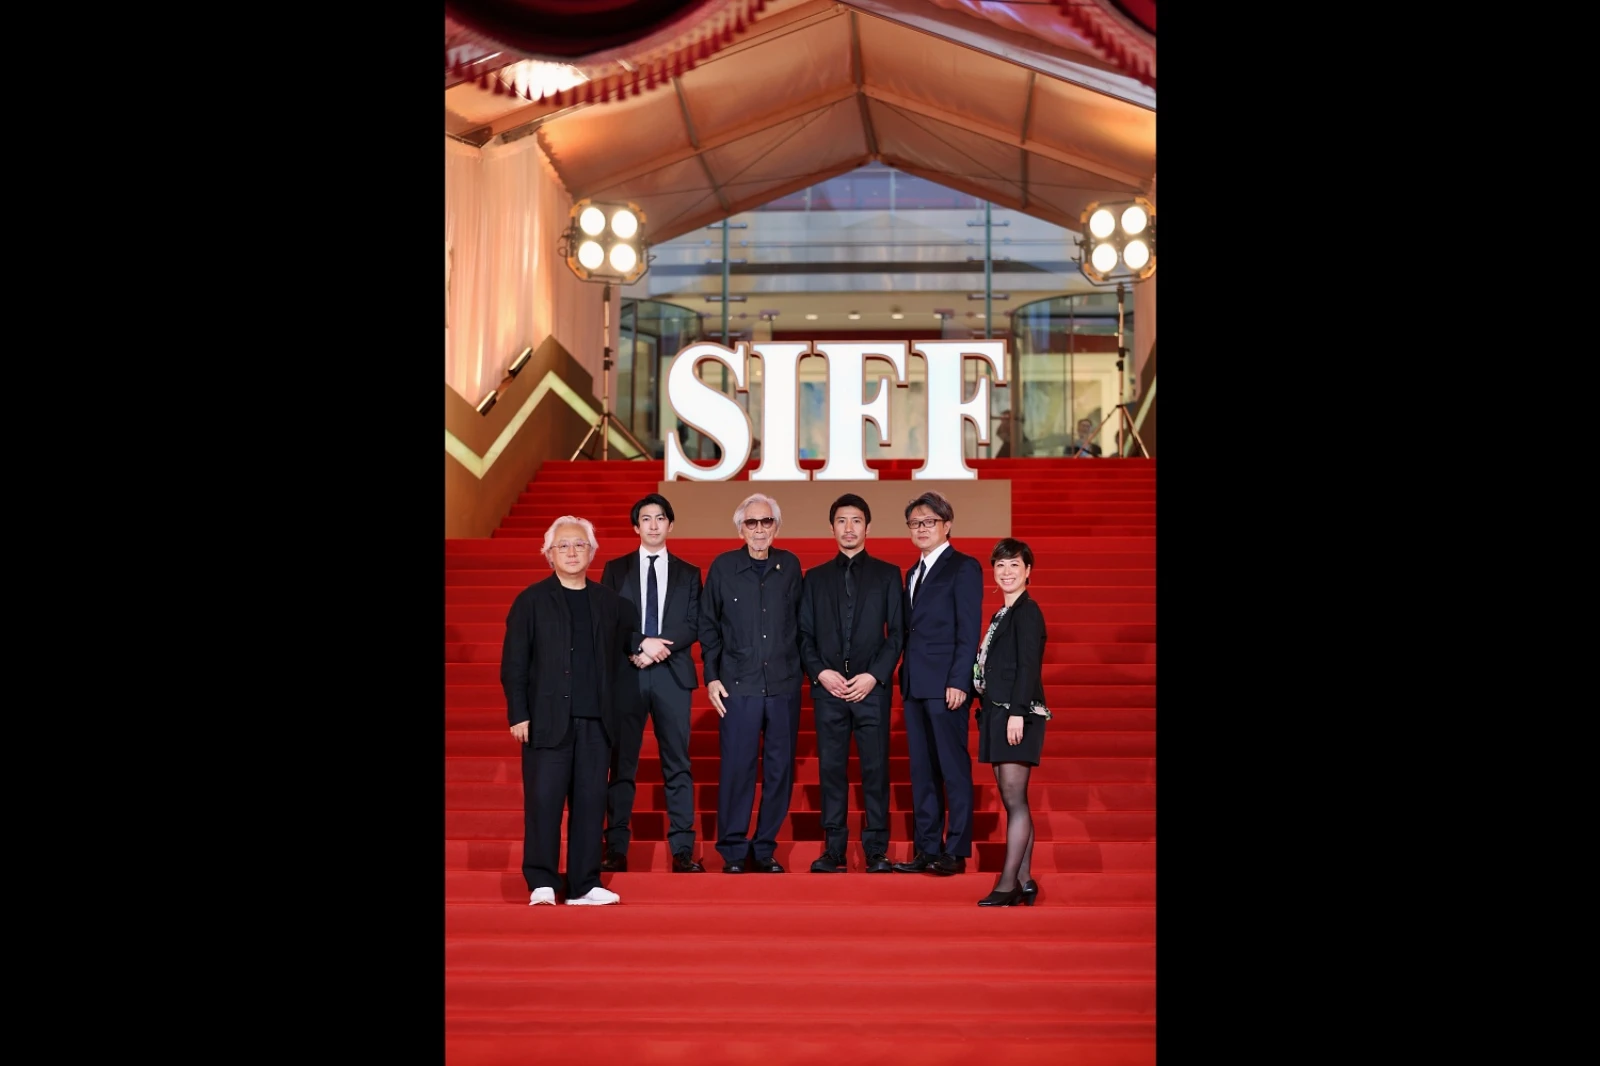 【写真】第25回上海国際映画祭(SIFF) レッドカーペット 映画『こんにちは、母さん』 (山田洋次監督)